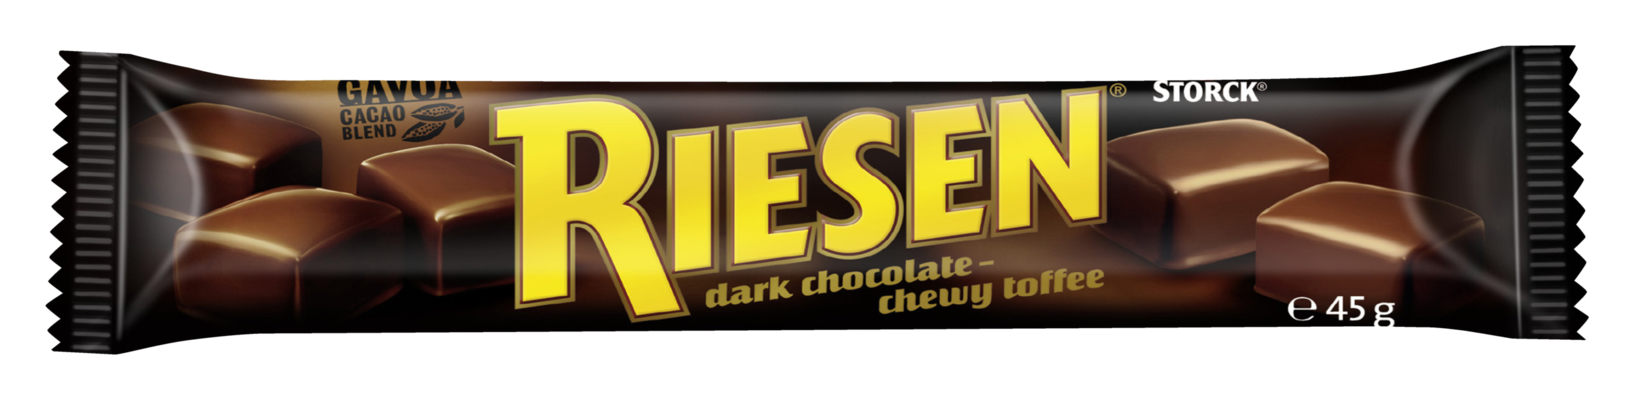 RIESEN stickpack - Chokladkola täckt med kraftig mörk choklad (30 %)